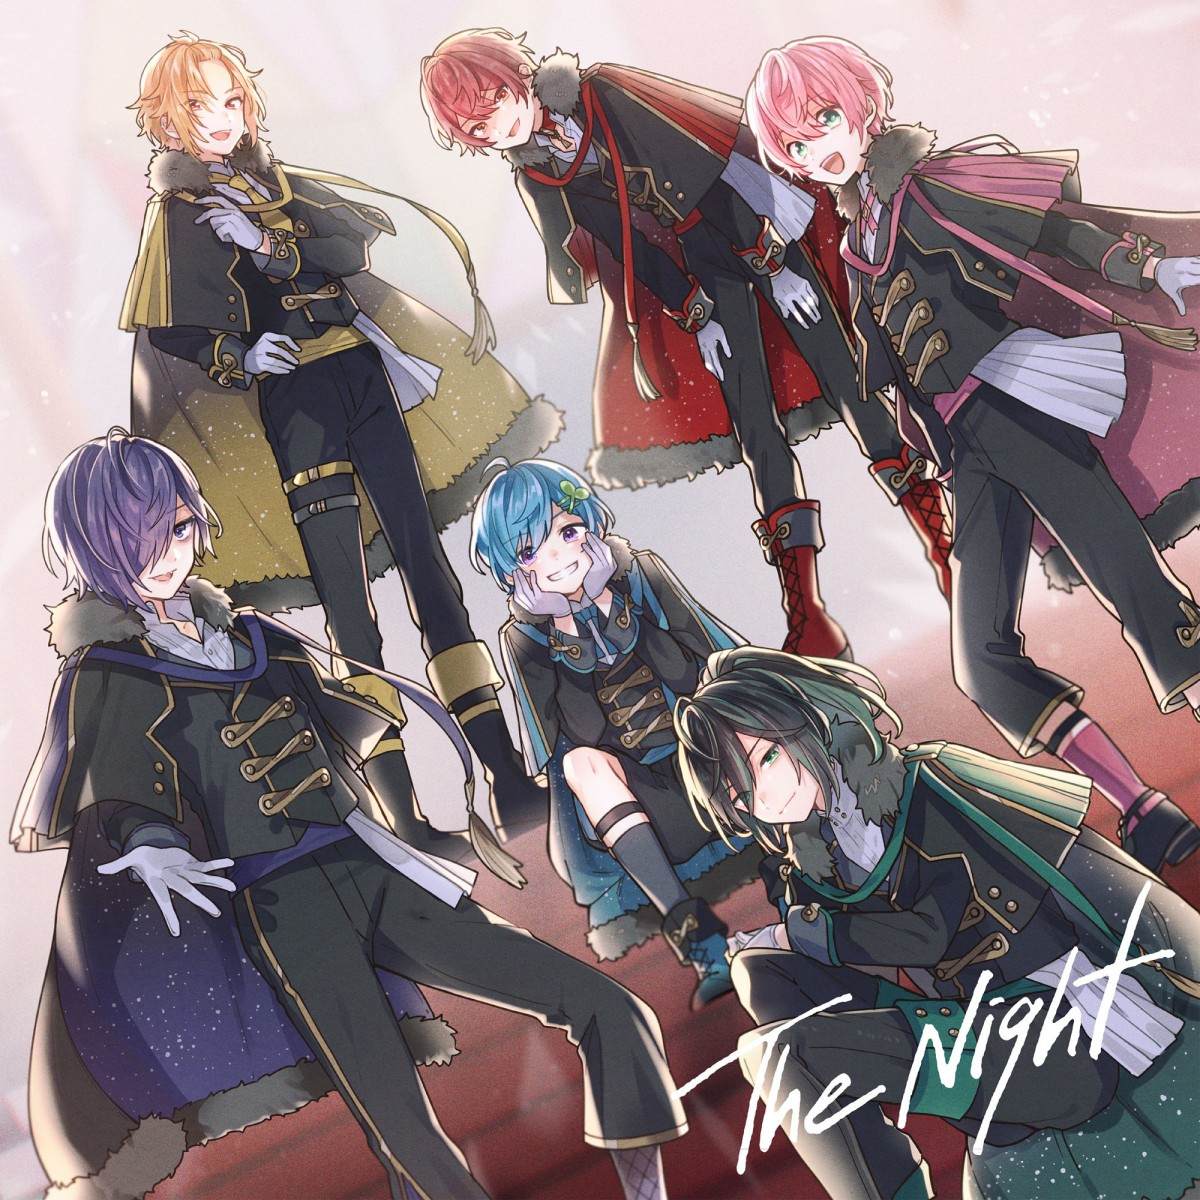 Knighta 騎士a 1stアルバムが8 11発売 すとぷり ななもり がプロデュース Oricon News